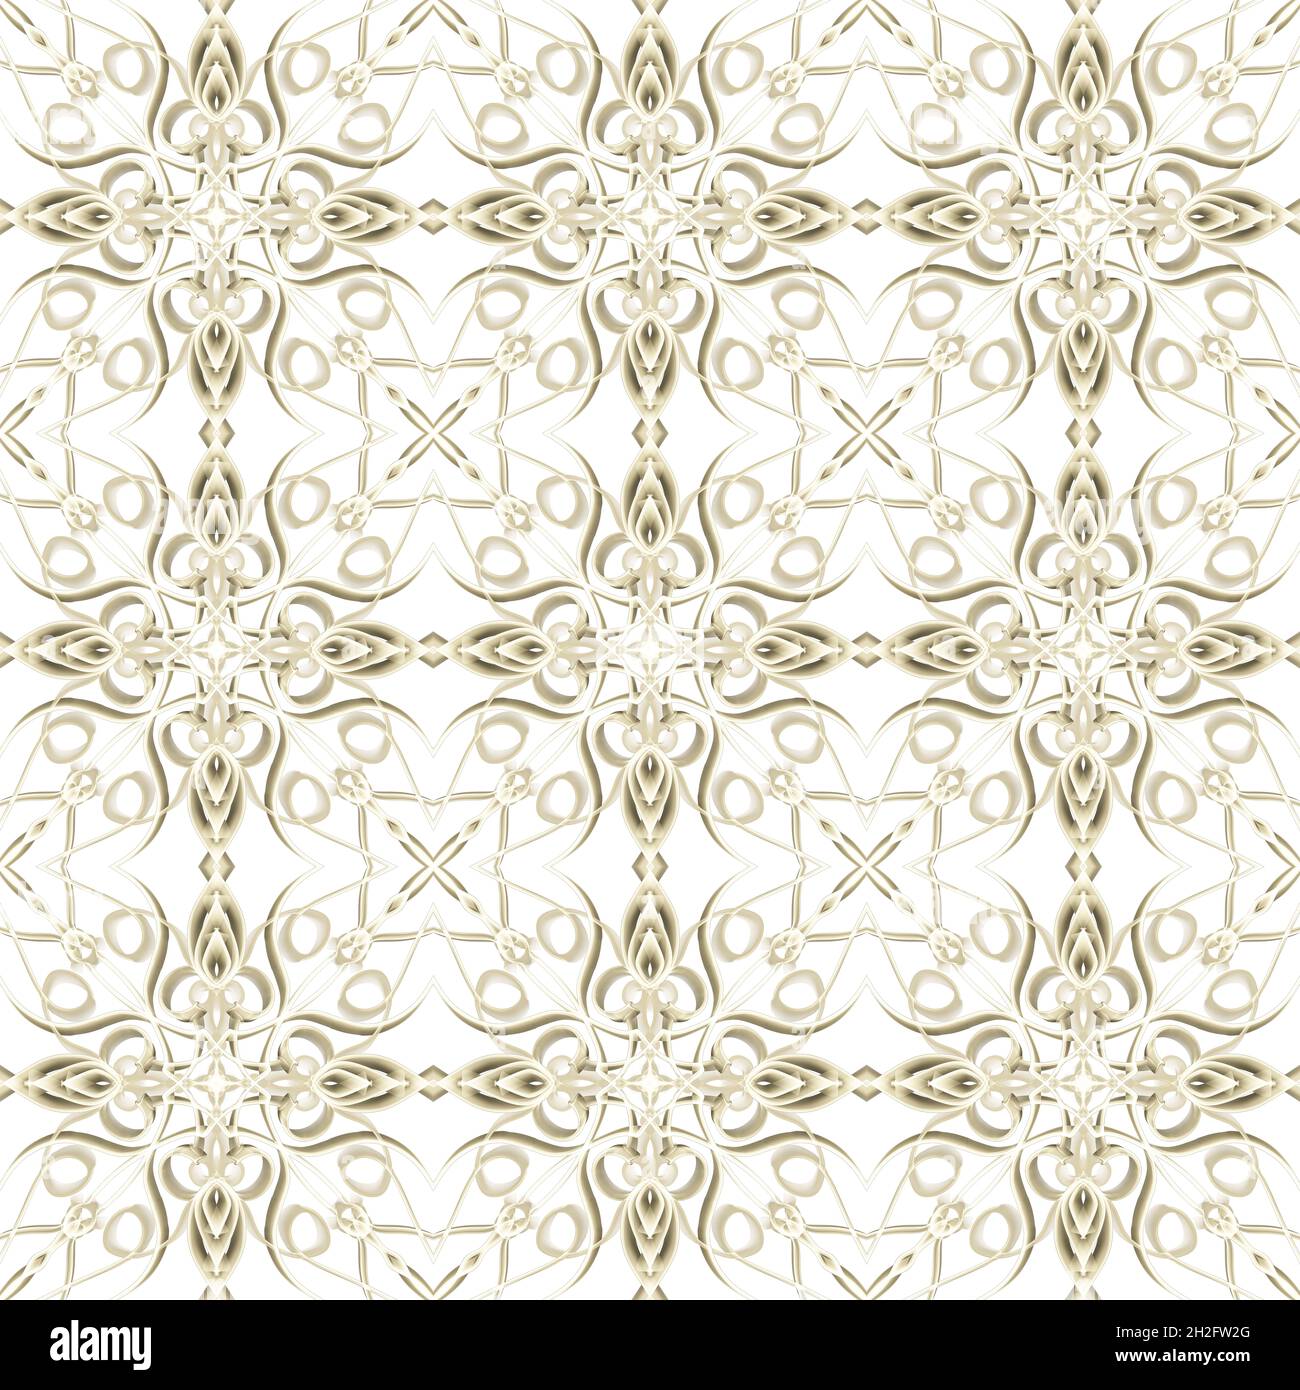 Nahtlose abstrakte geometrische florale Oberfläche Muster in goldener Farbe mit symmetrischer Form horizontal und vertikal wiederholen. Für Modedesign verwenden Stockfoto